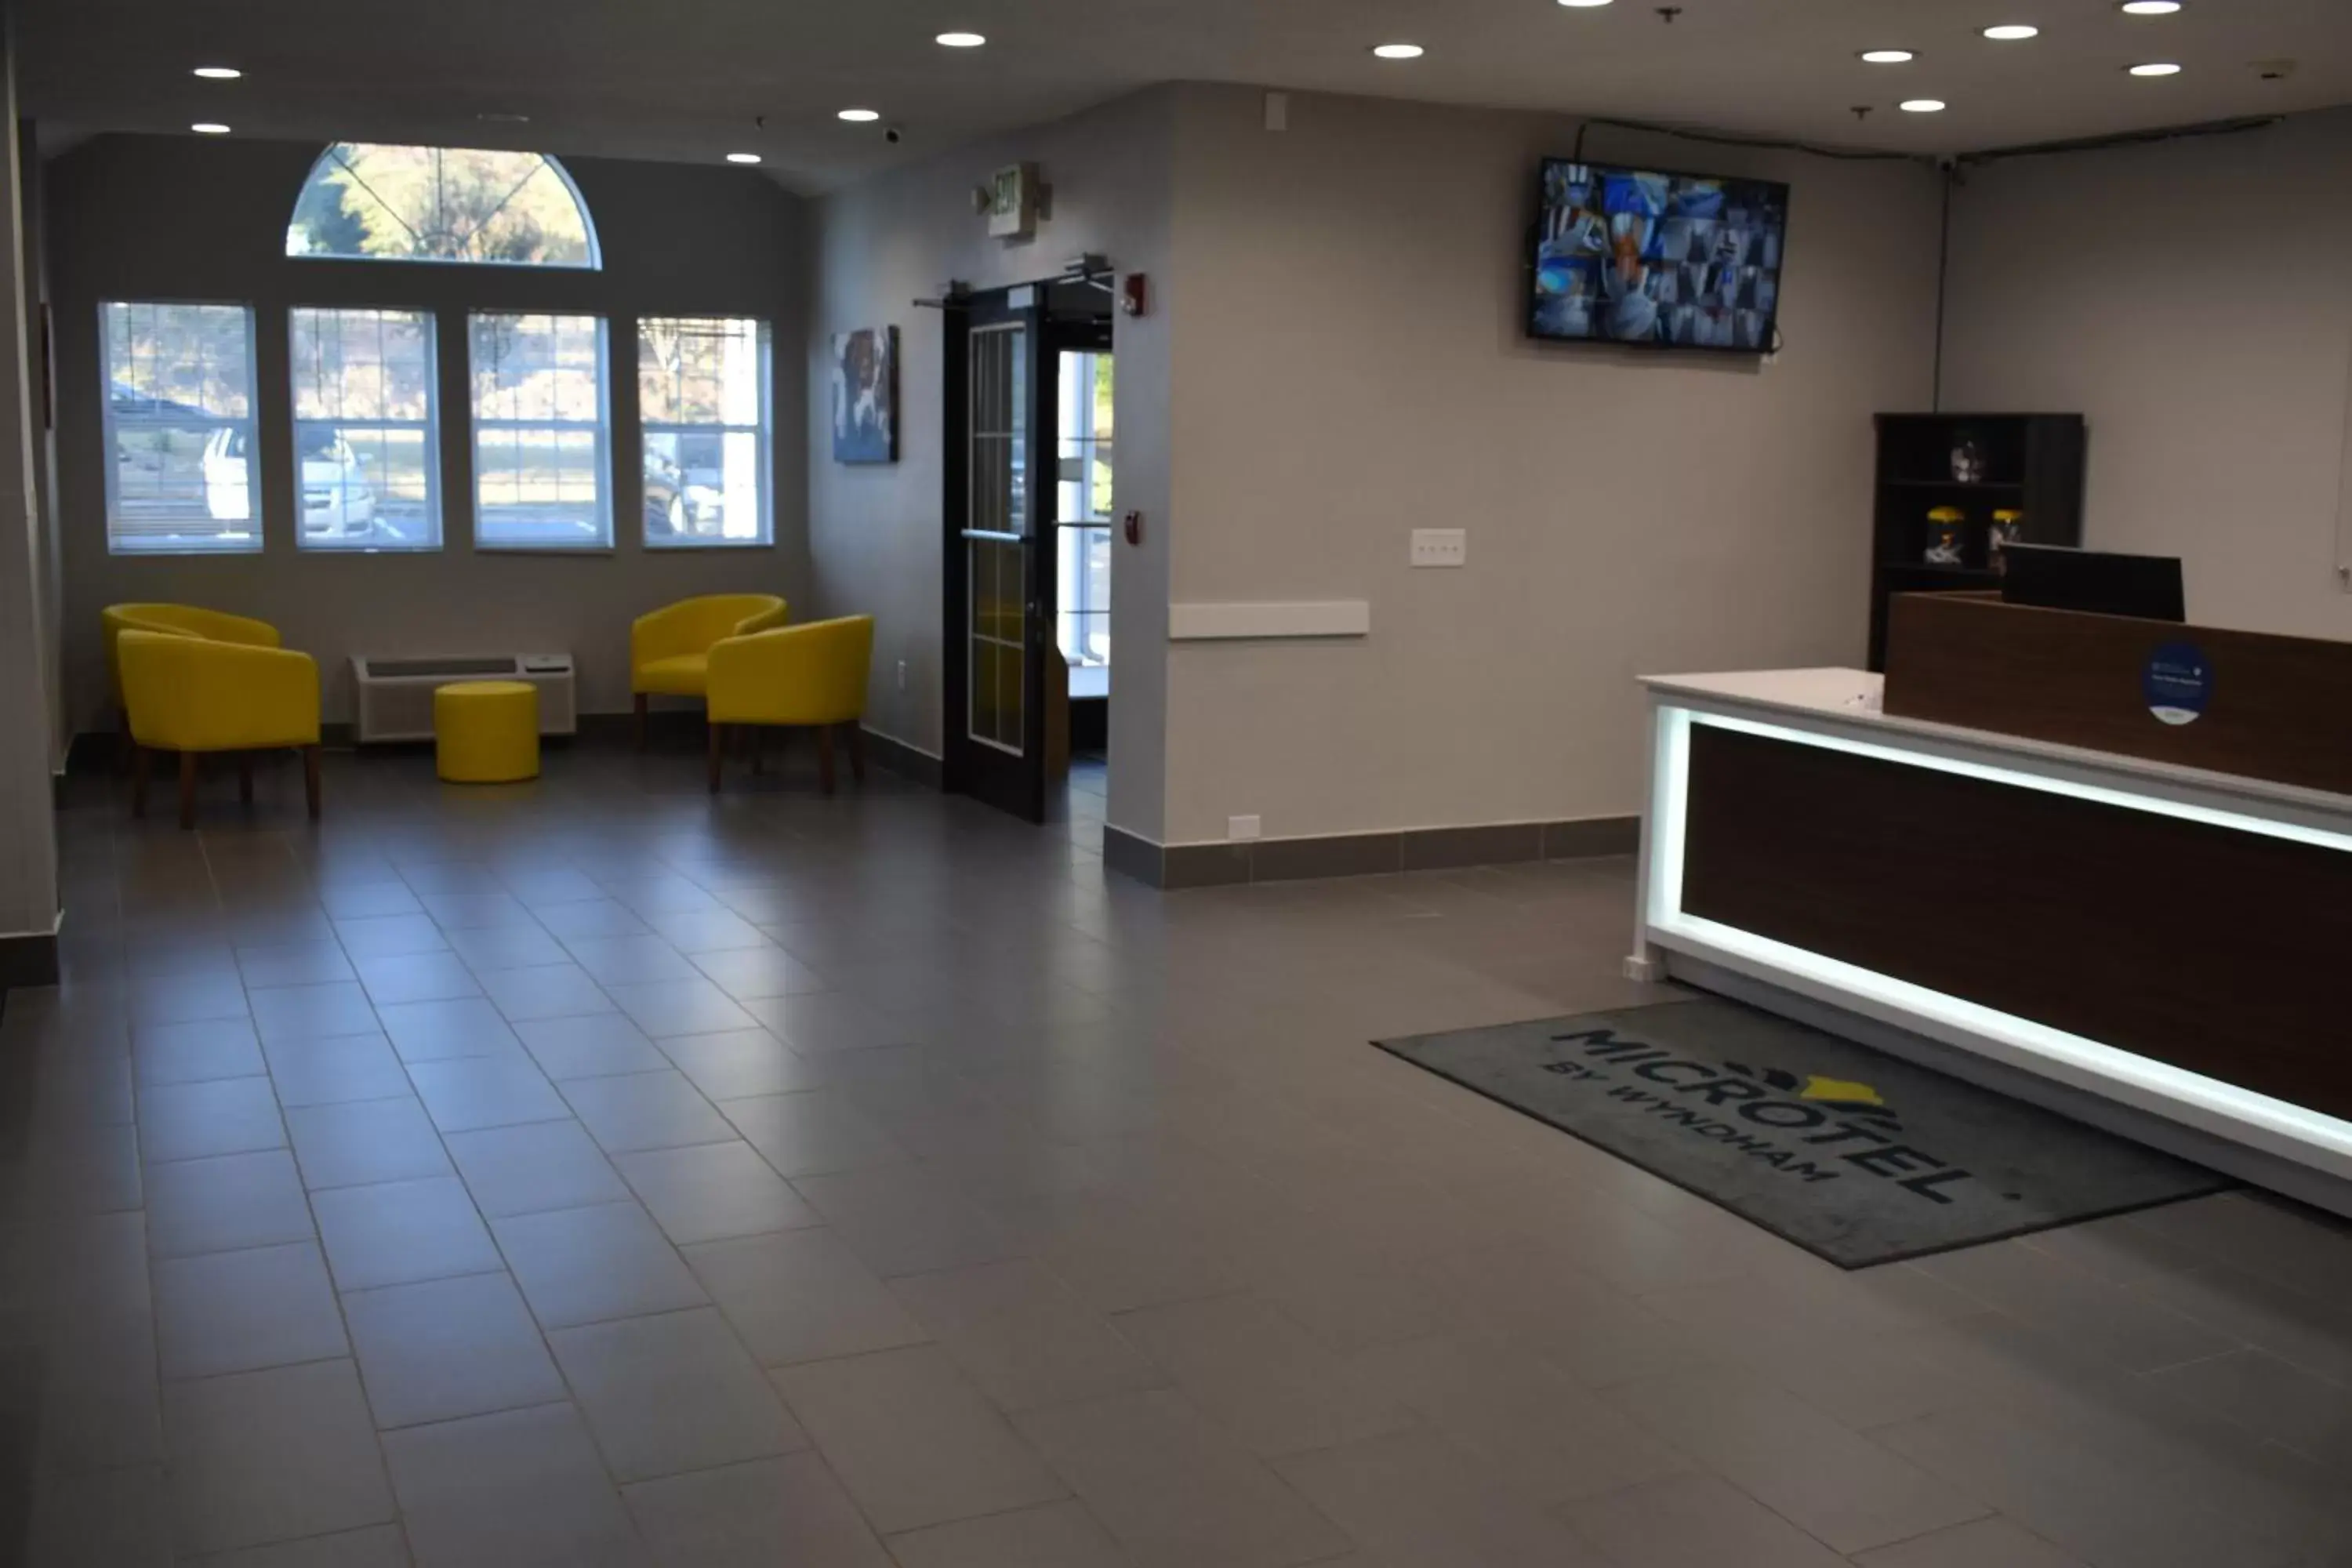 Lobby or reception, Lobby/Reception in Microtel Inn & Suites by Wyndham Stockbridge/Atlanta I-75